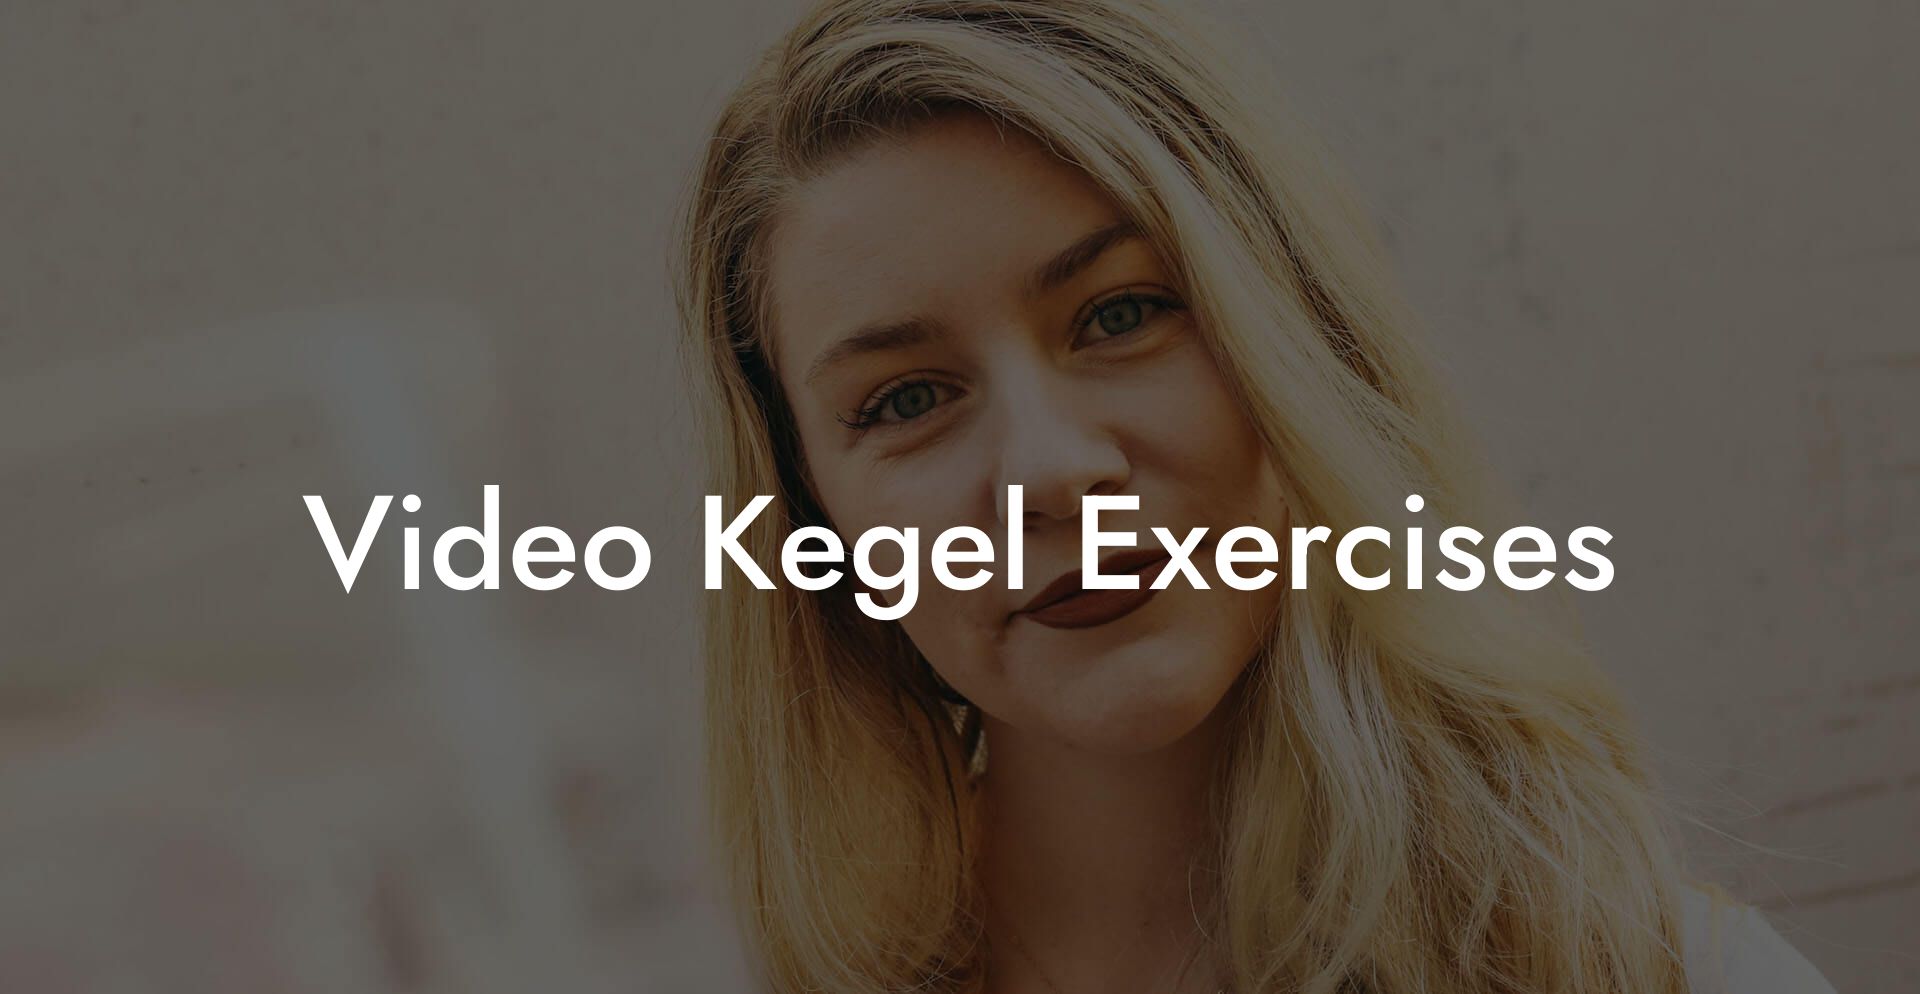 Video Kegel Exercises